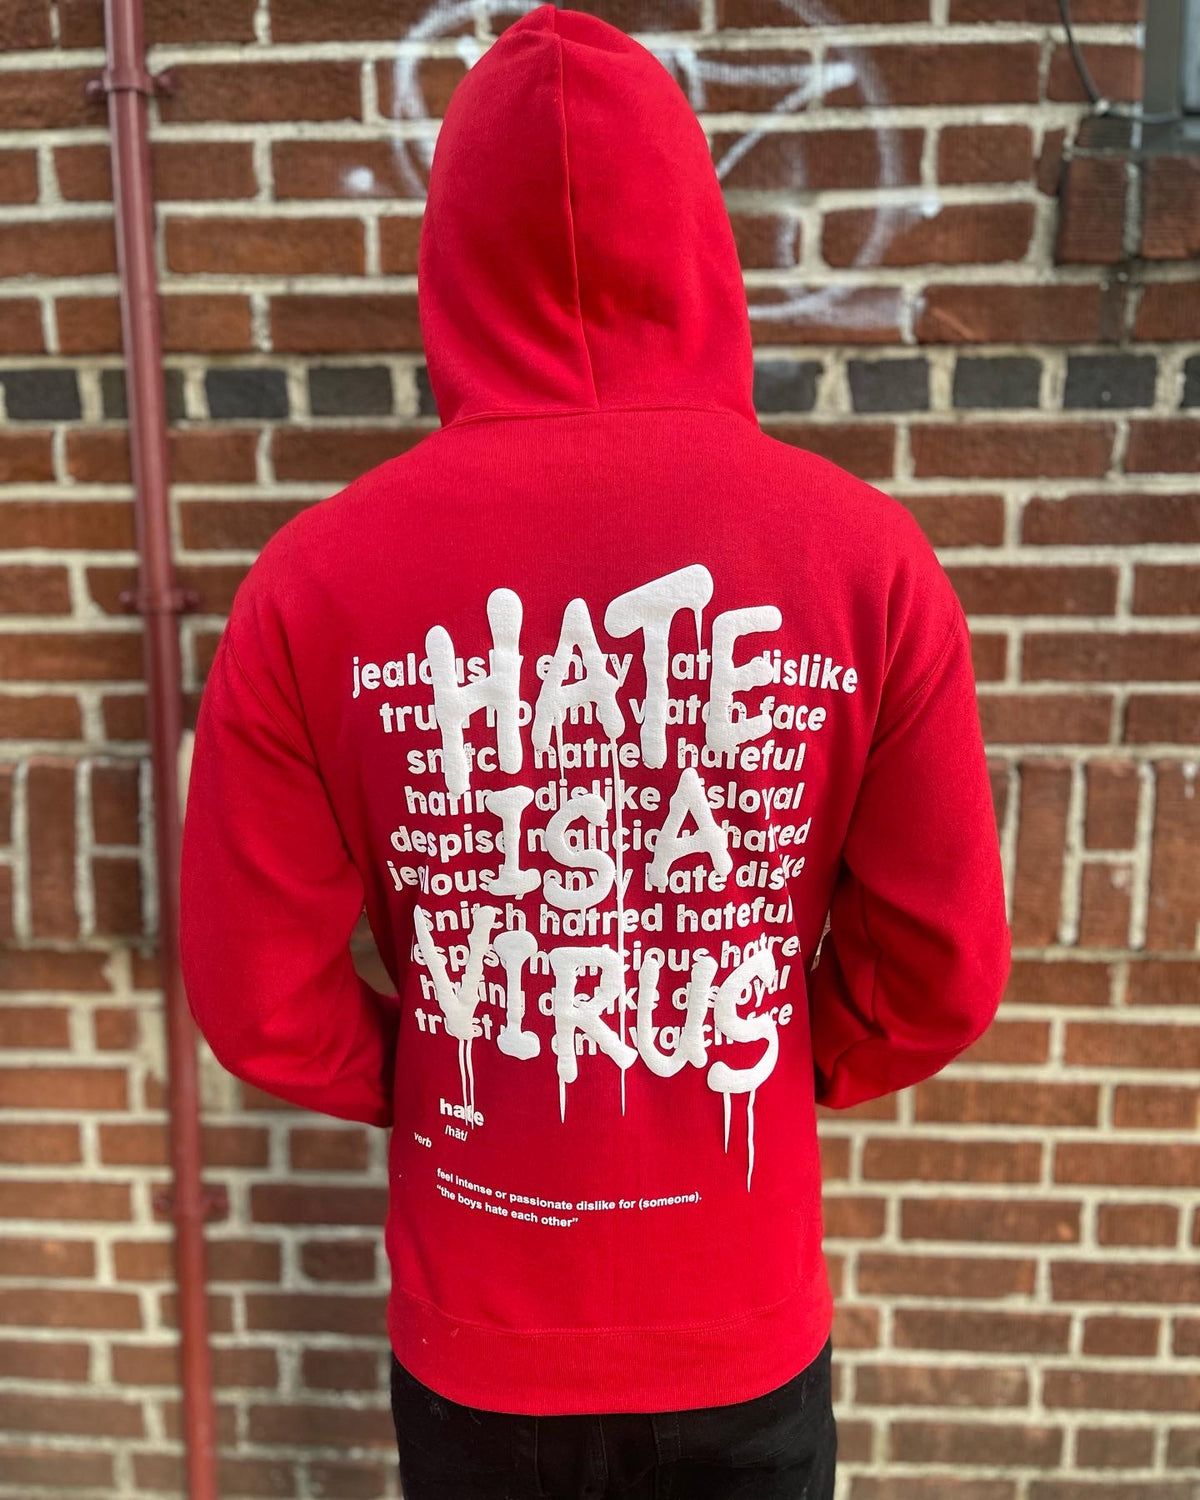 HATE IS A VIRUS Red Hoody